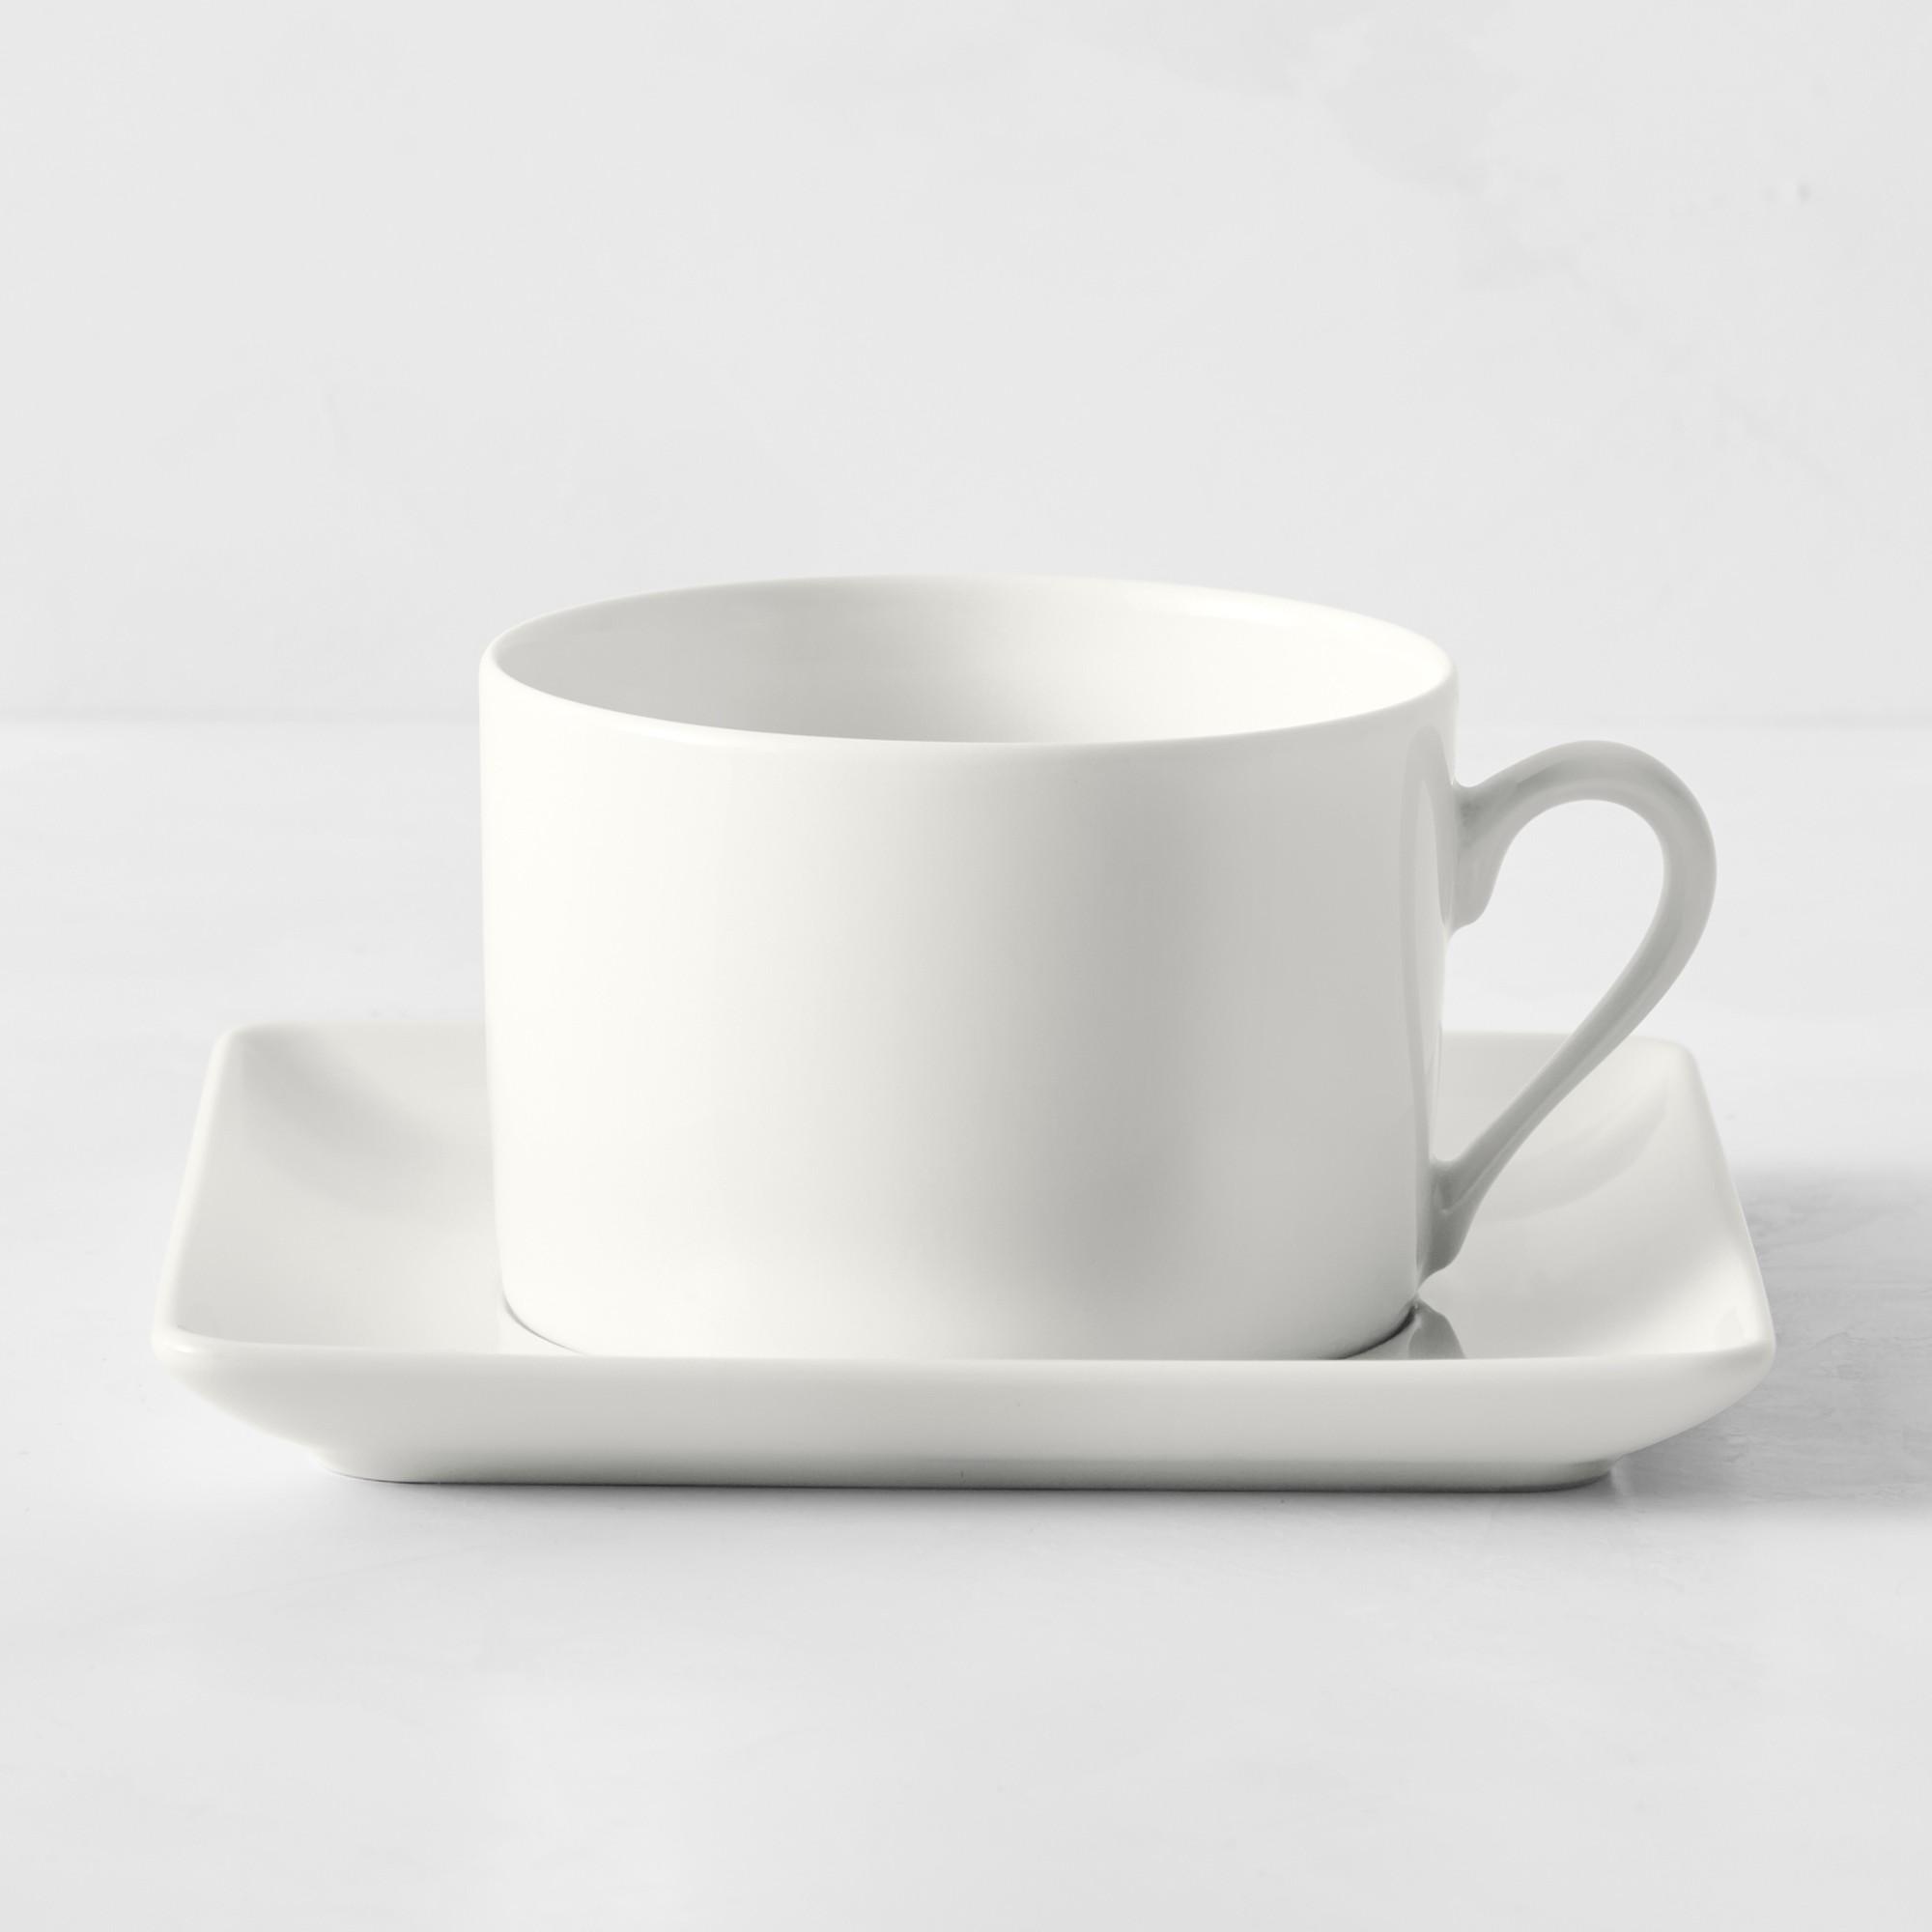 Apilco Zen Porcelain Cups & Saucers